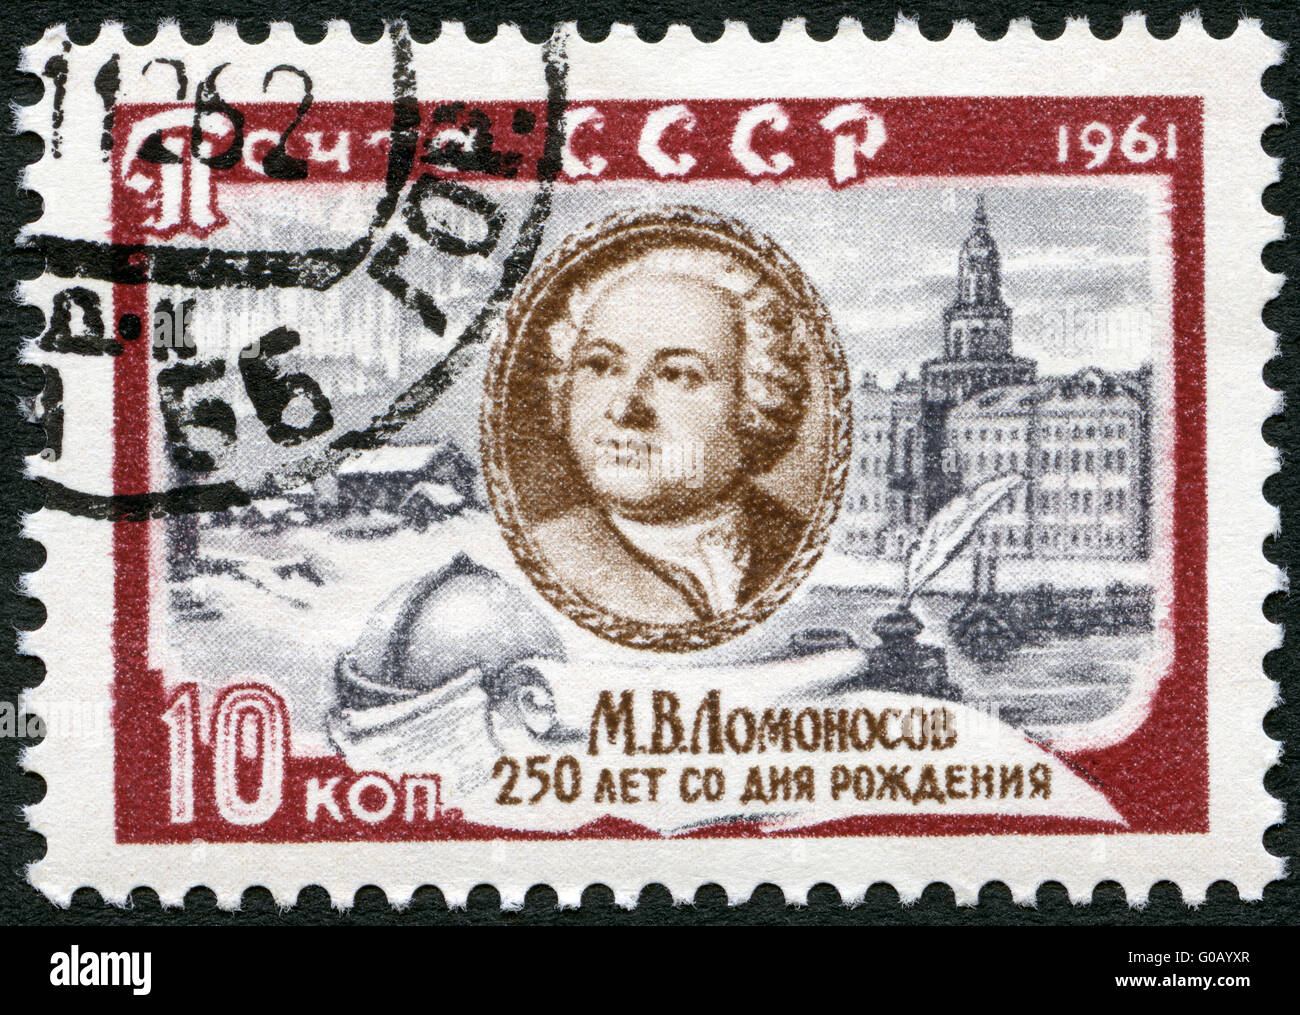 Urss - 1961 : montre M.V. M. Lomonossov (1711-1765), son lieu de naissance et l'Académie des sciences de Leningrad, 250e anniversaire de la naissance Banque D'Images